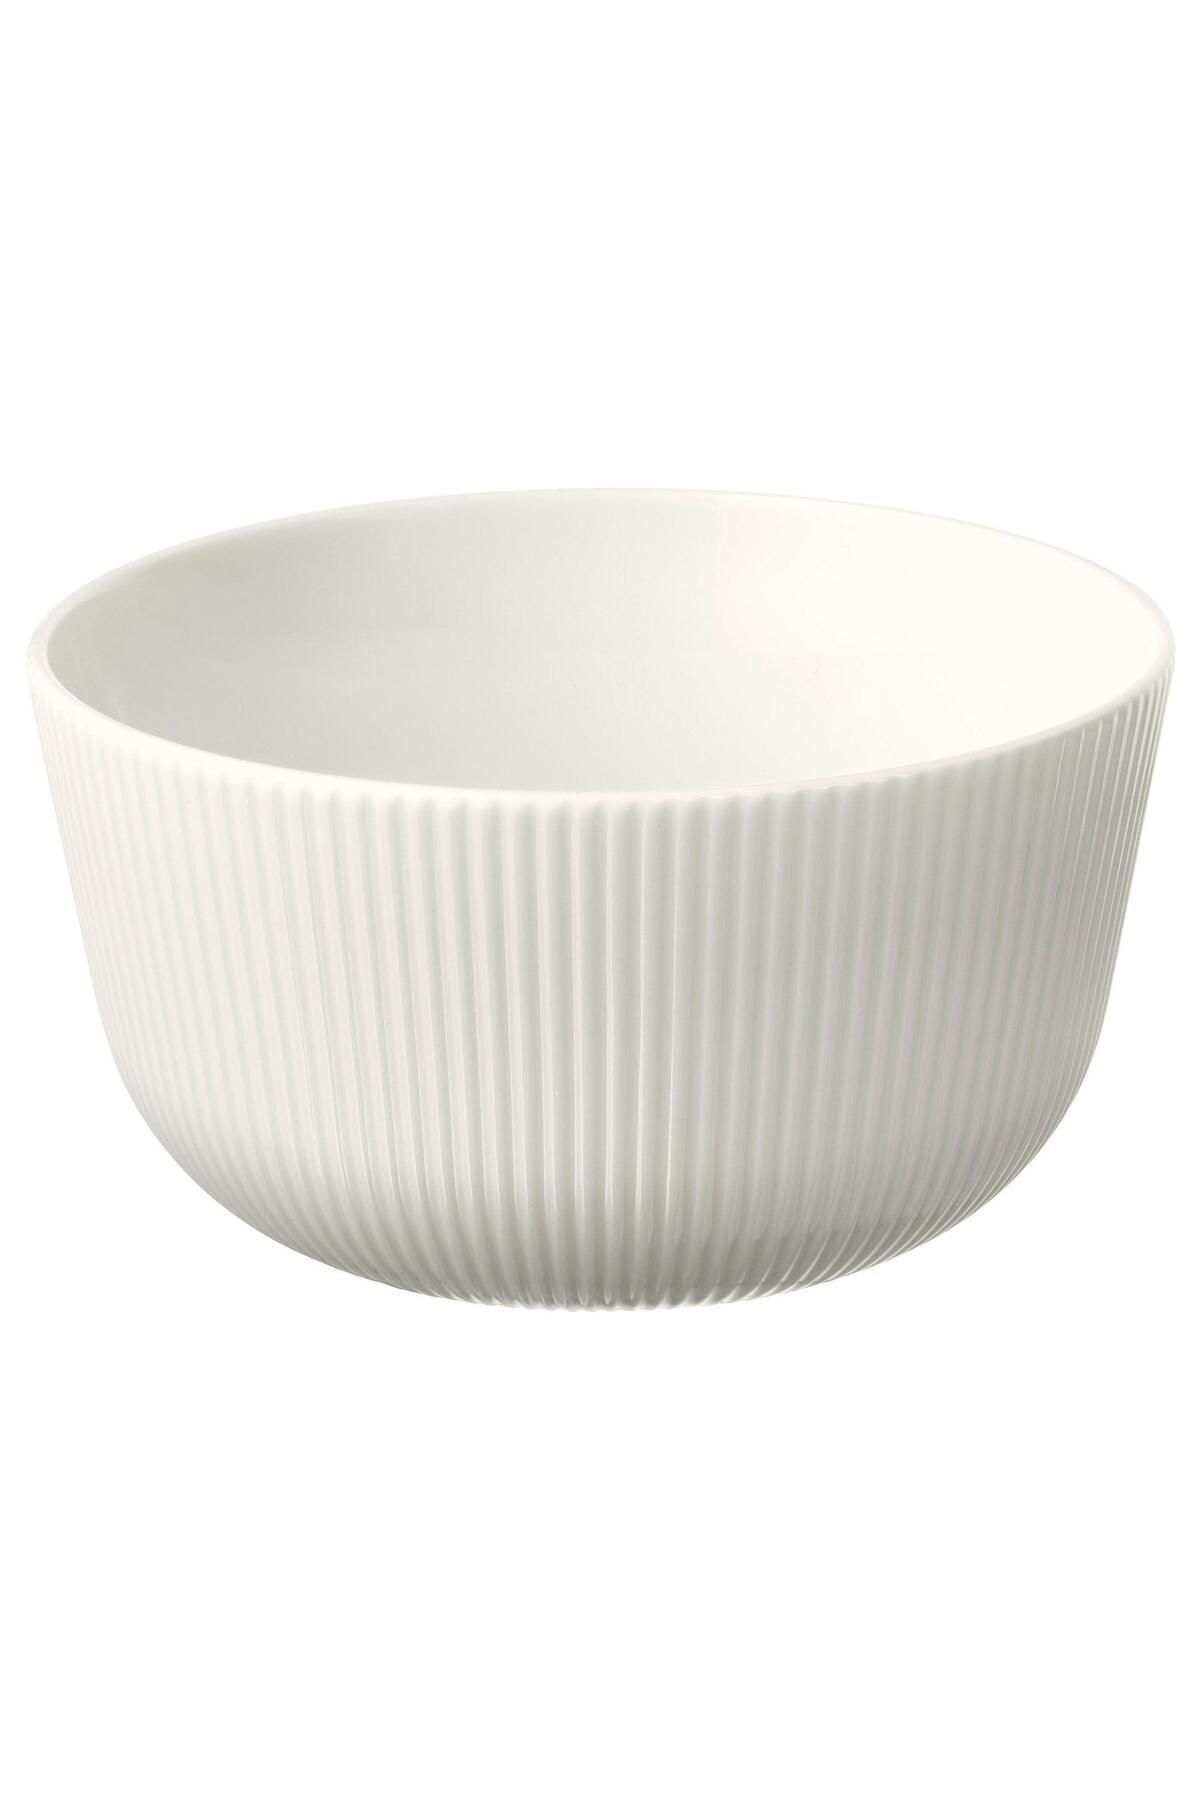 IKEA 2 Li Kase Seti Beyaz Renk MeridyenDukkan 13 cm Zarif-Modern Salata,Yemek Kasesi